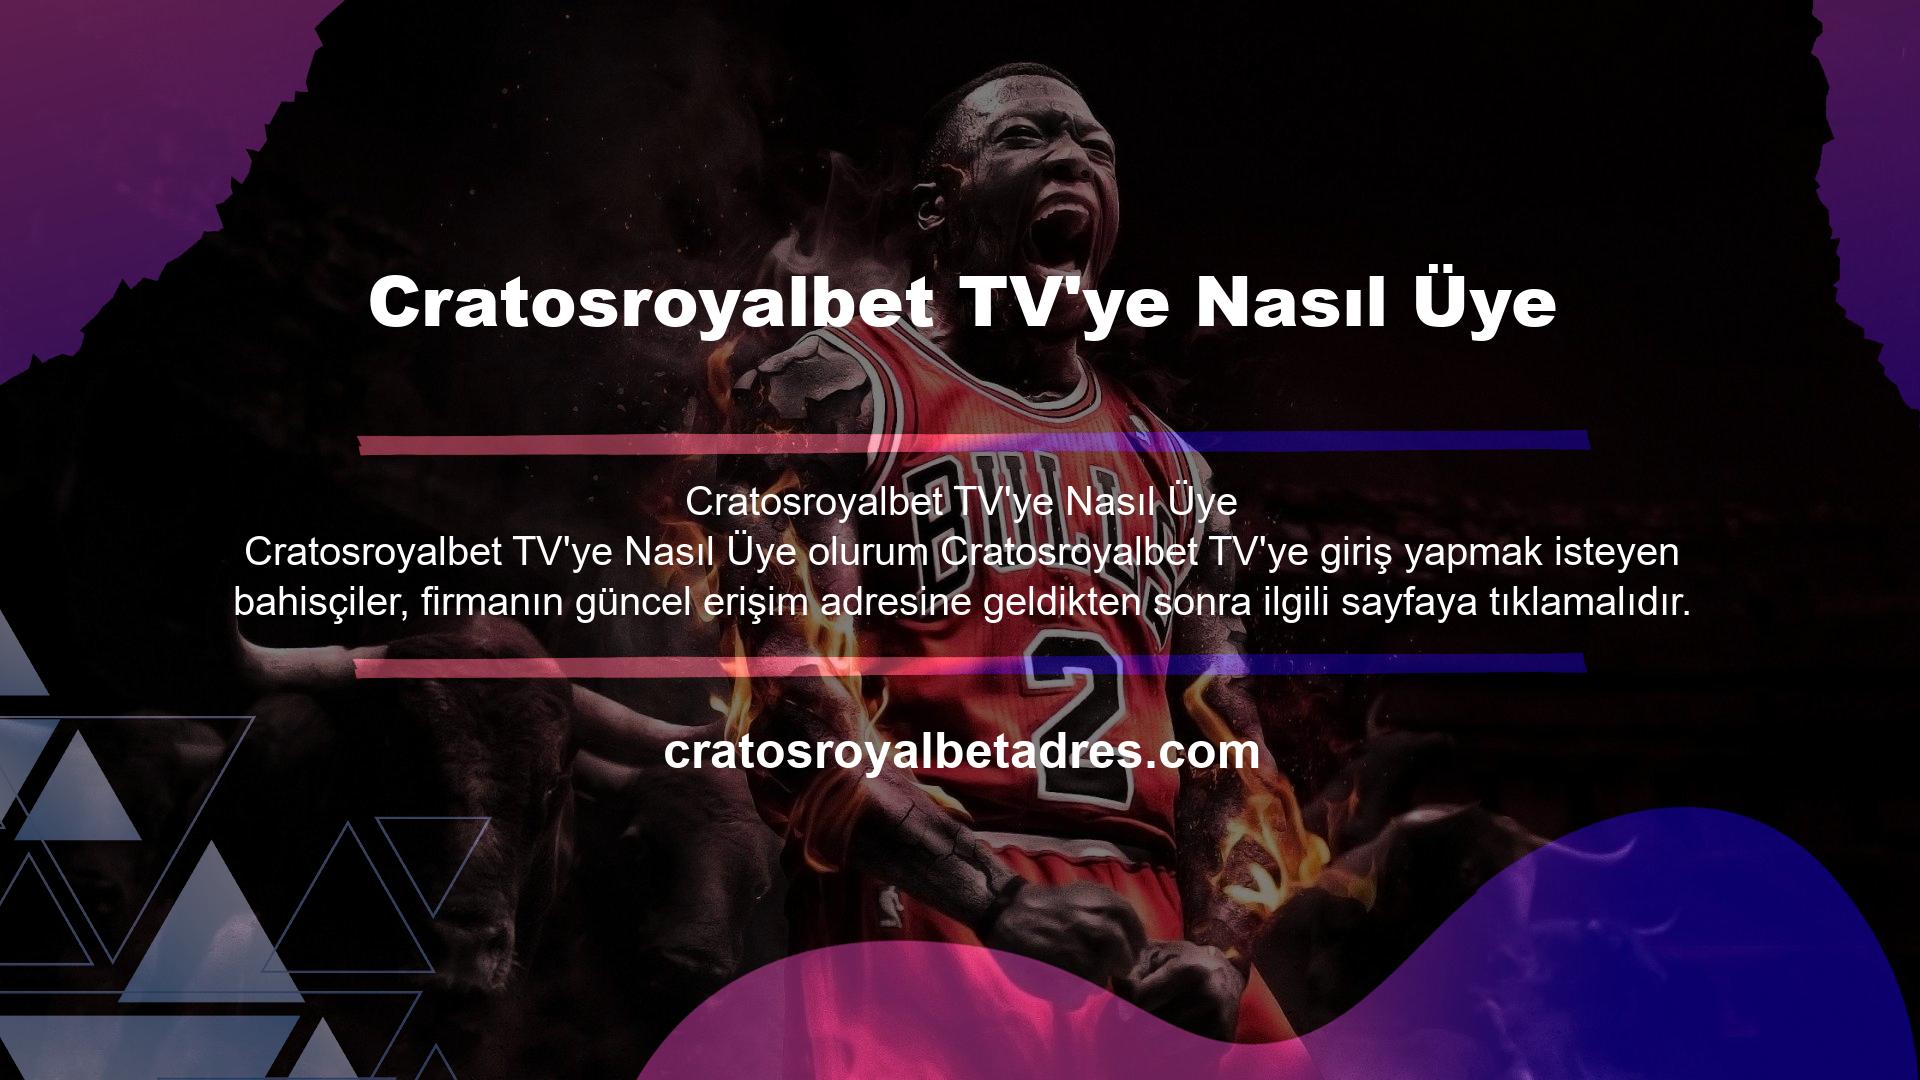 İkinci bir sekmede açılacak olan Cratosroyalbet TV'de gün içinde başlayan maçları izleyebilir veya maçları doğrudan arayabilirsiniz